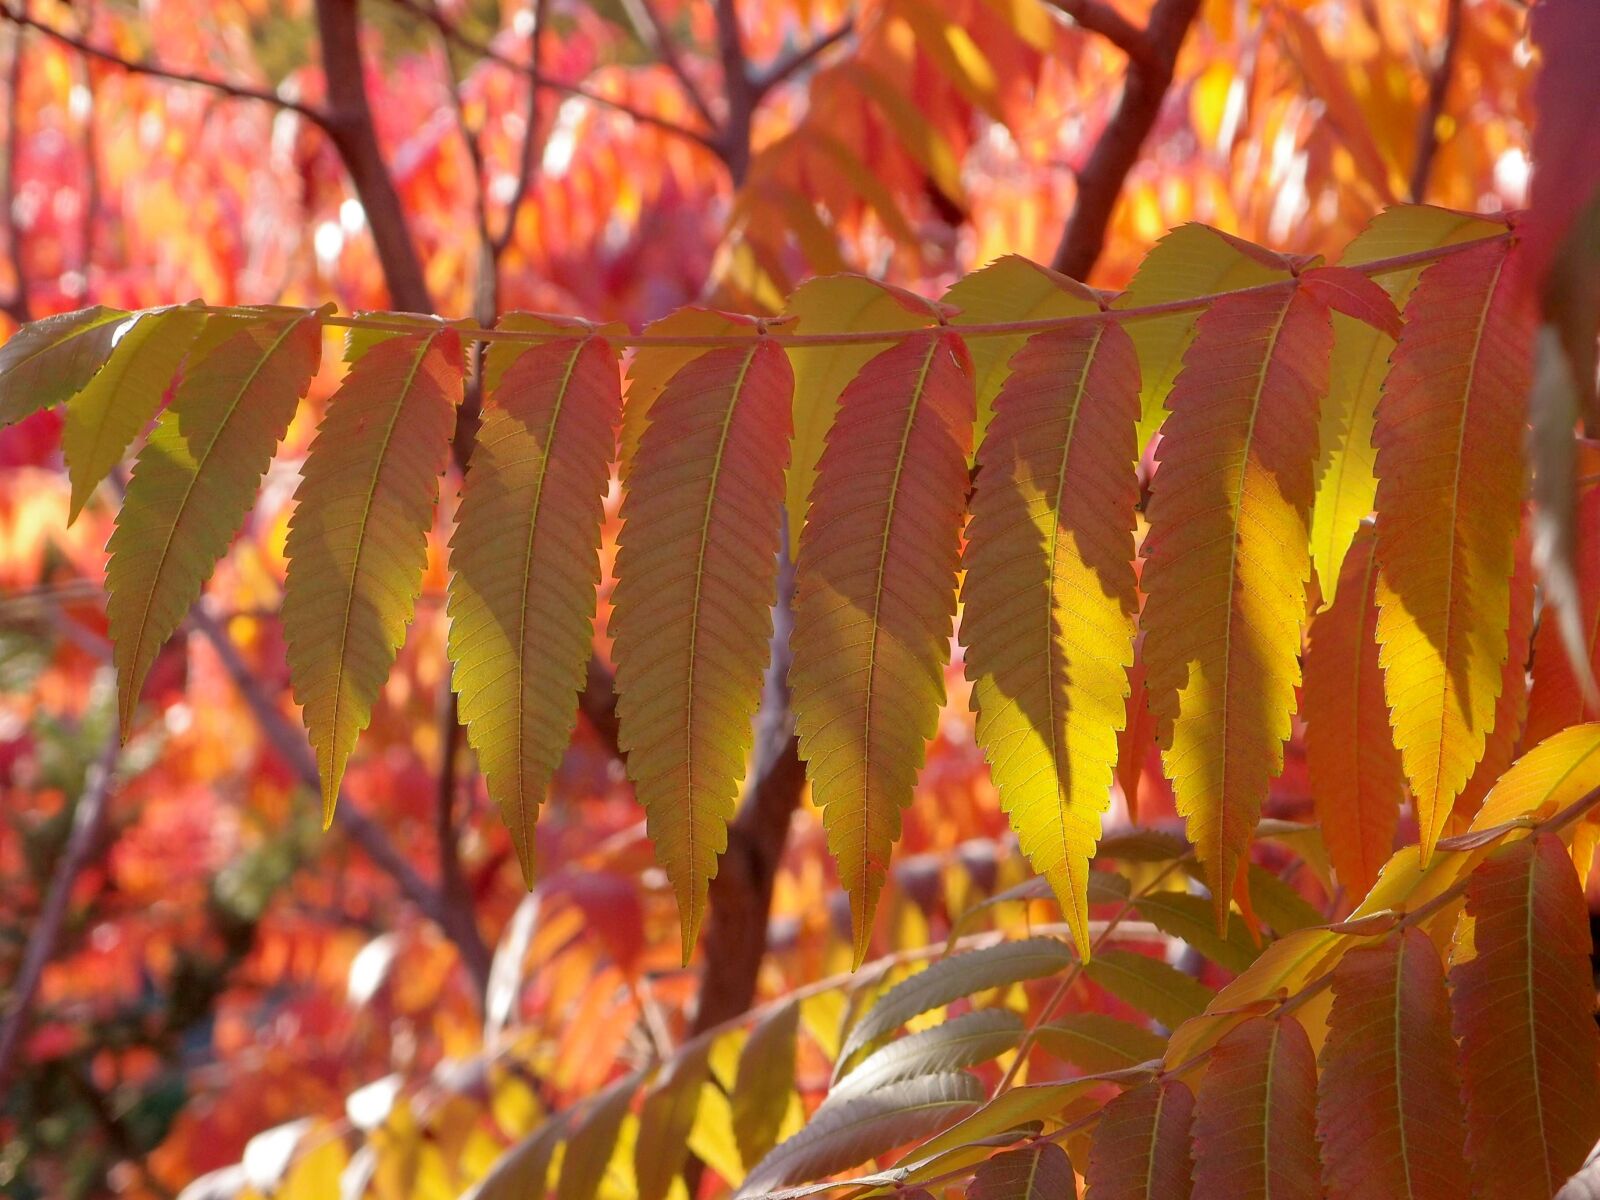 Olympus XZ-1 sample photo. Autumn, foliage, leaves photography